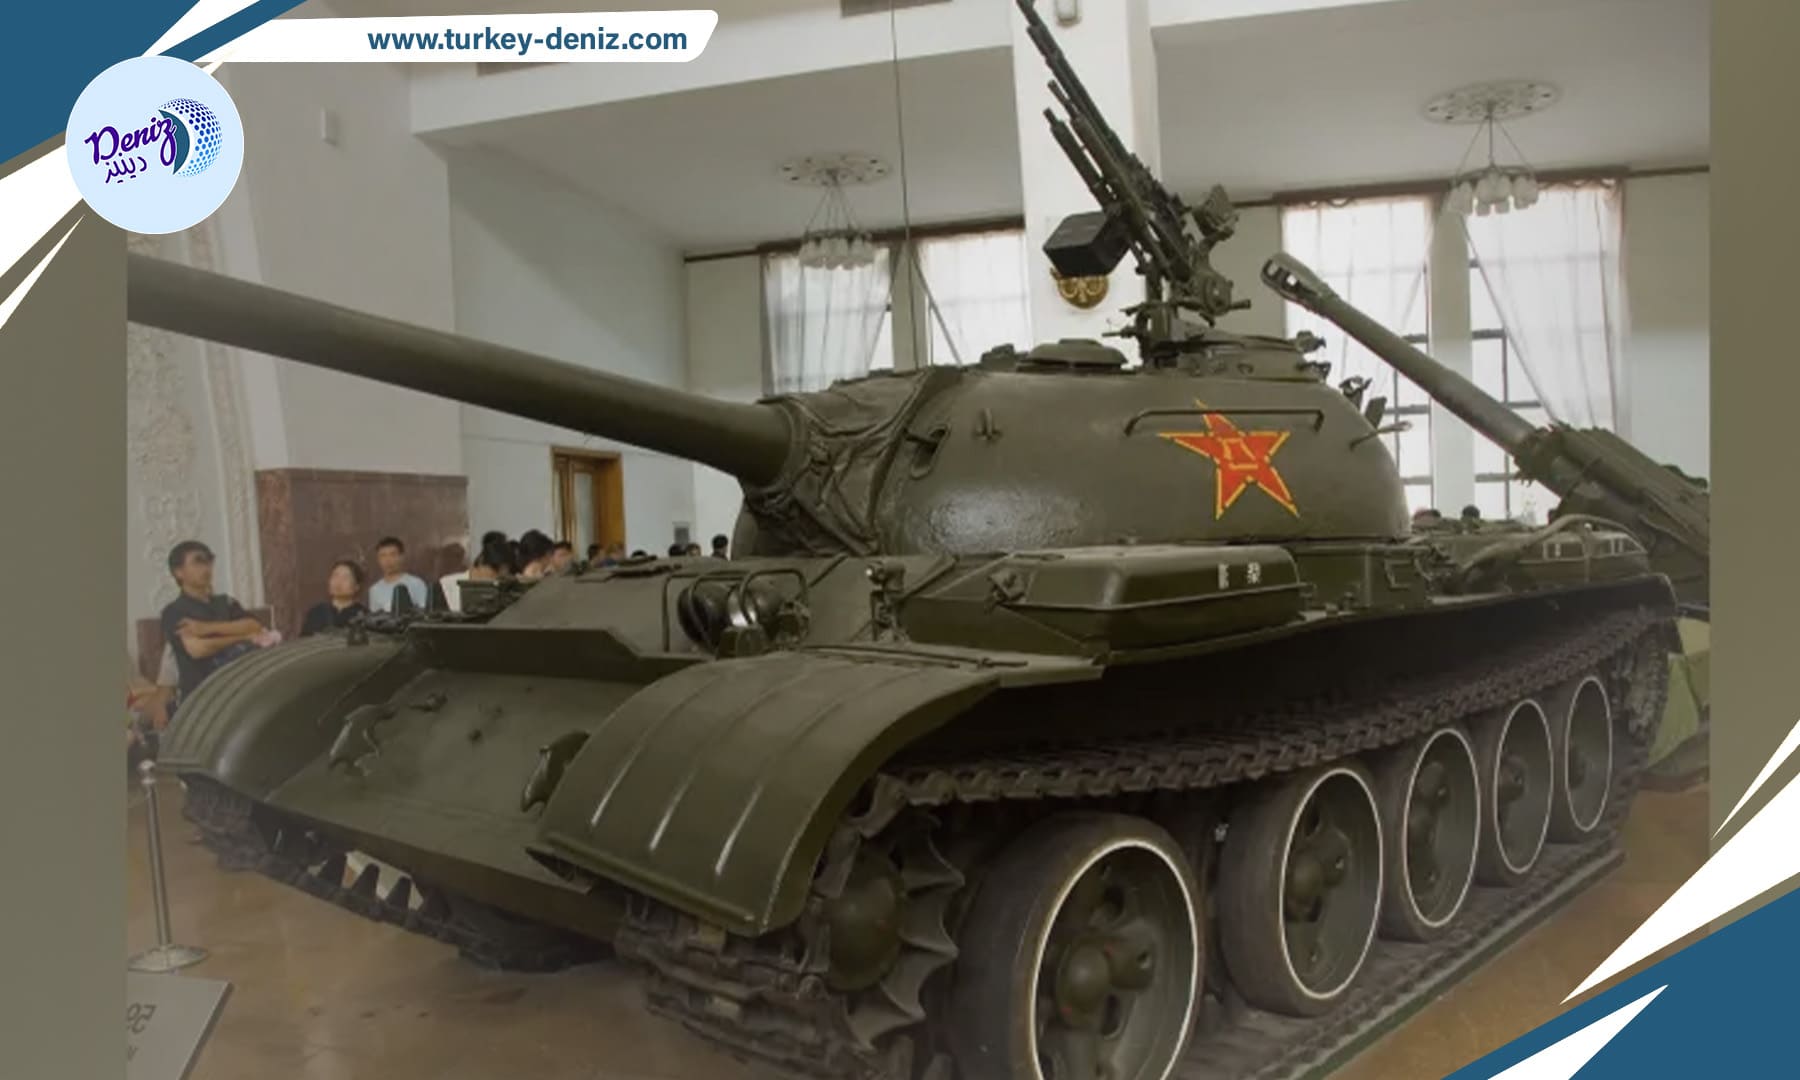 لدى جيش التحرير الشعبي الصيني خمسة نماذج دبابات رئيسية، يطغى عليها طراز “تايب 59”